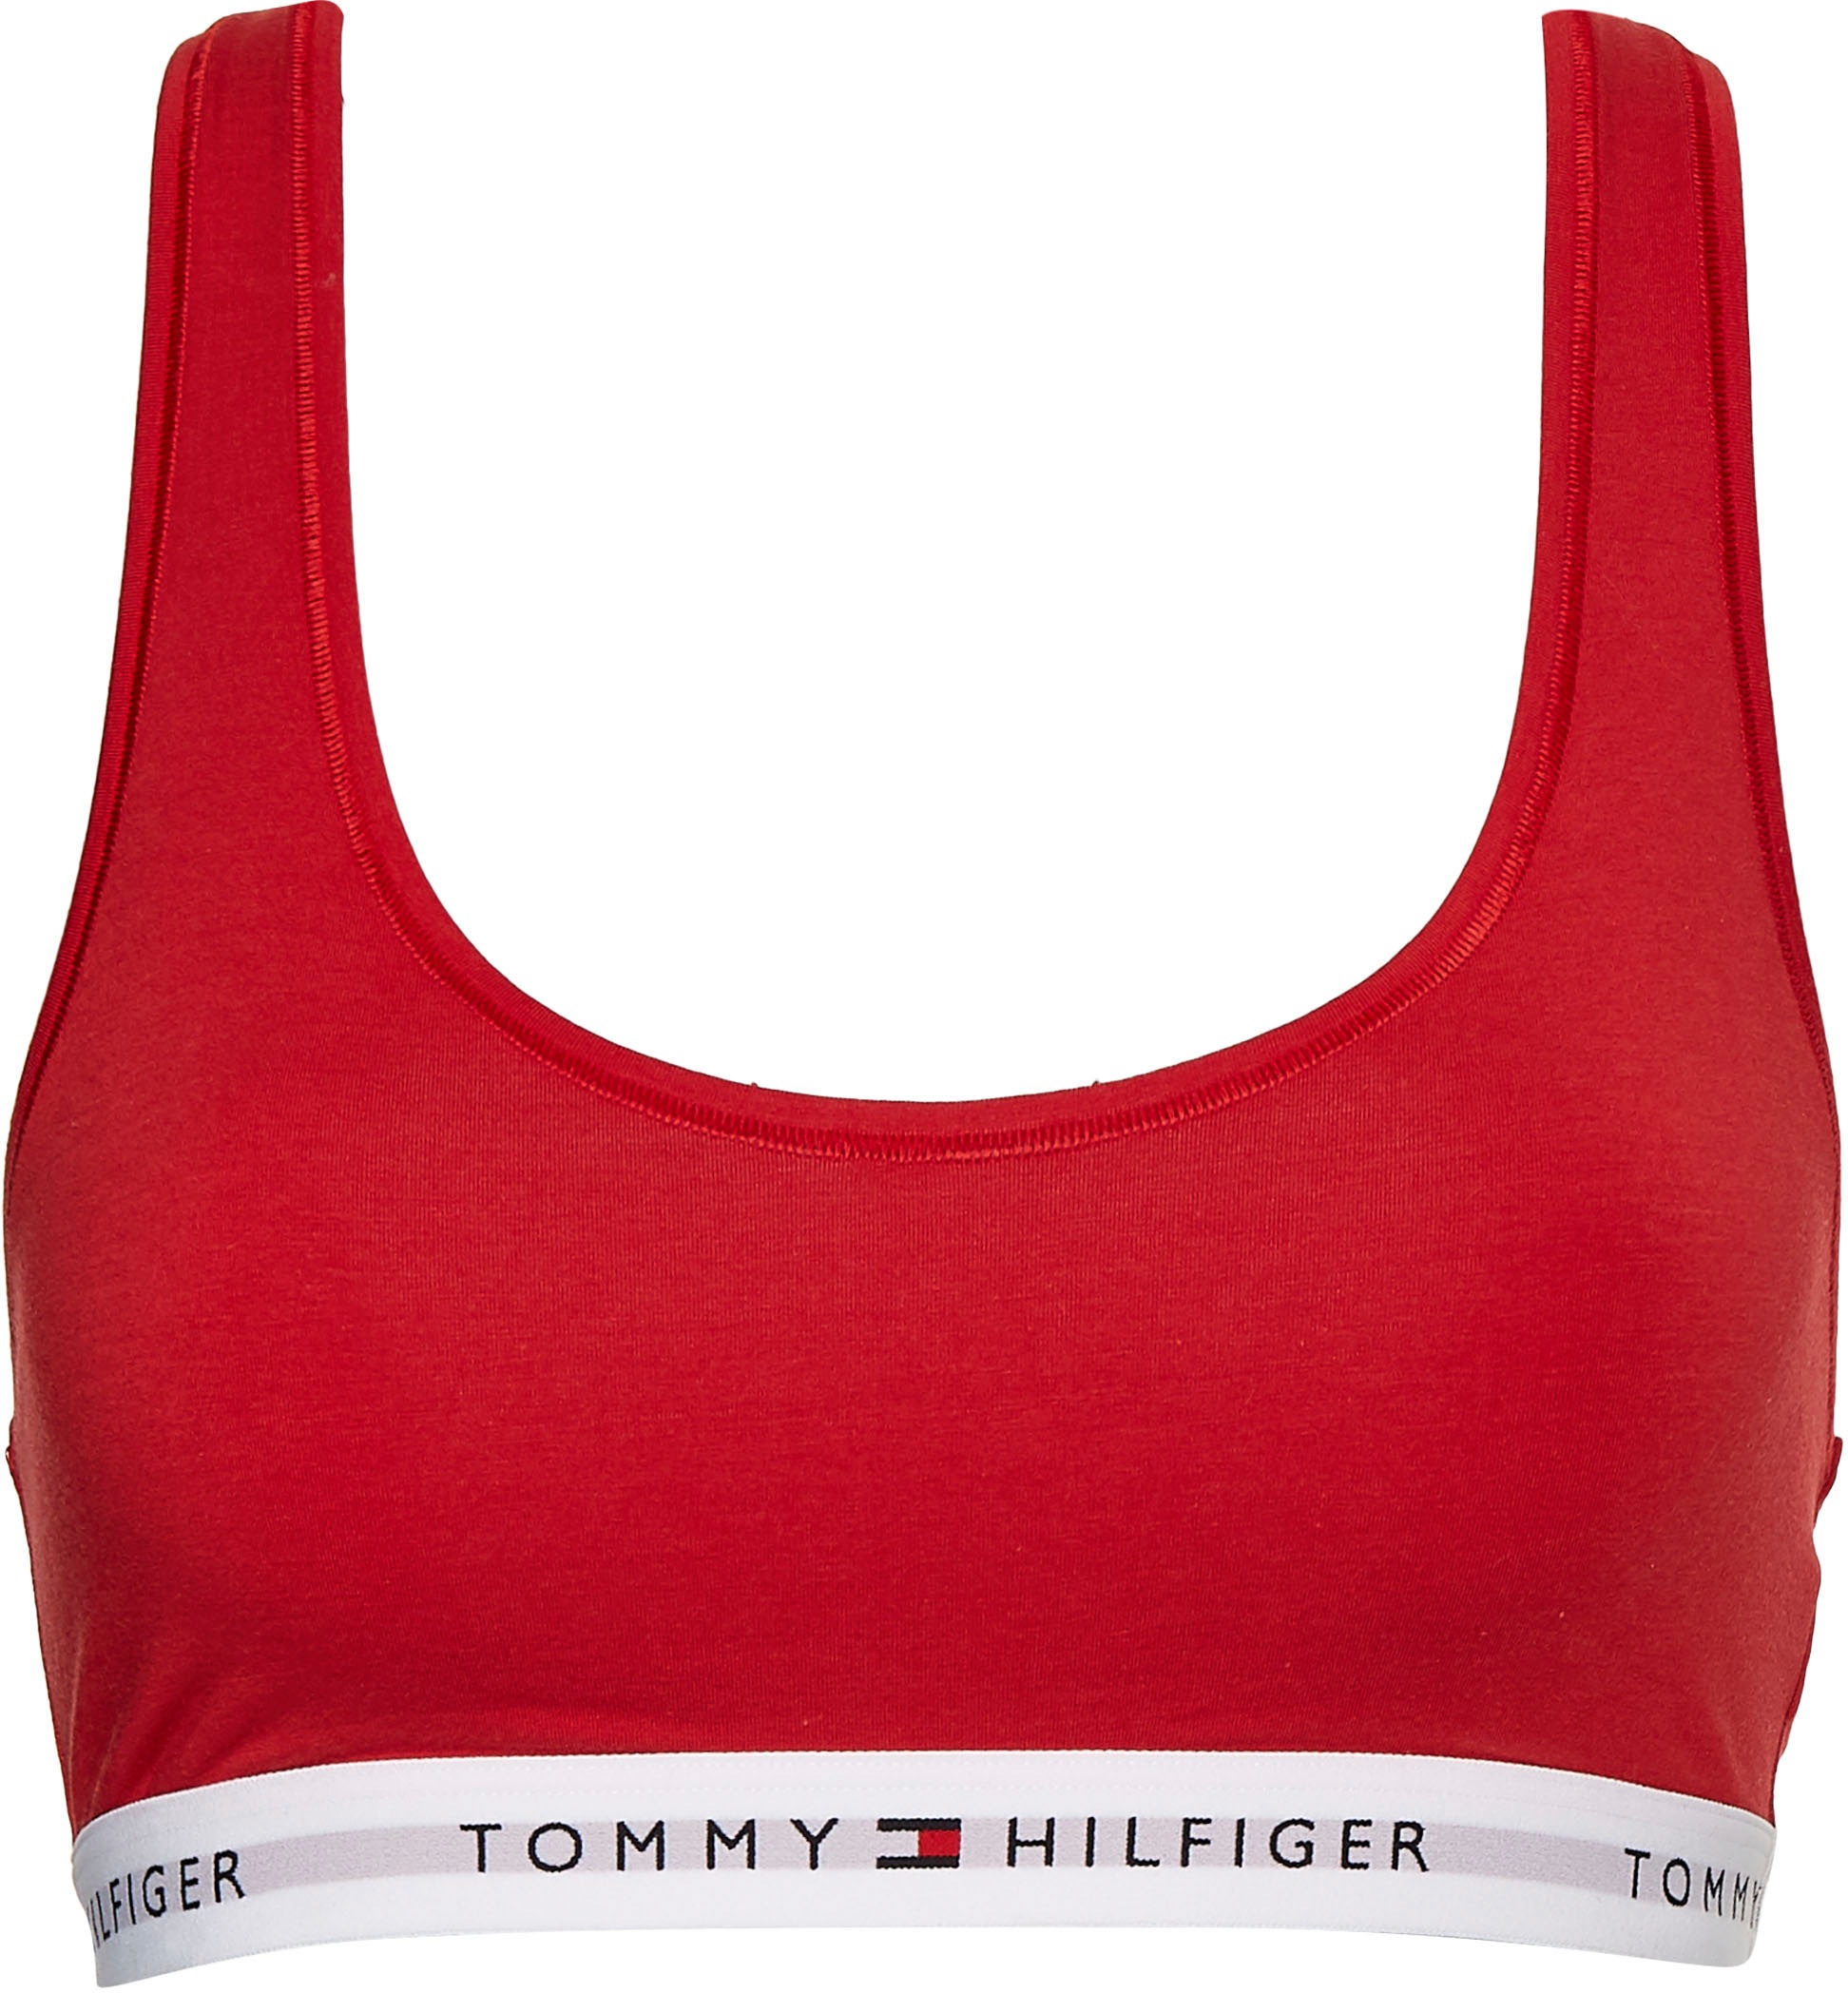 sur Hilfiger mit Tommy dem Unterbrustband Hilfiger Underwear Sport-Bustier, Schriftzügen auf Découvrir Tommy